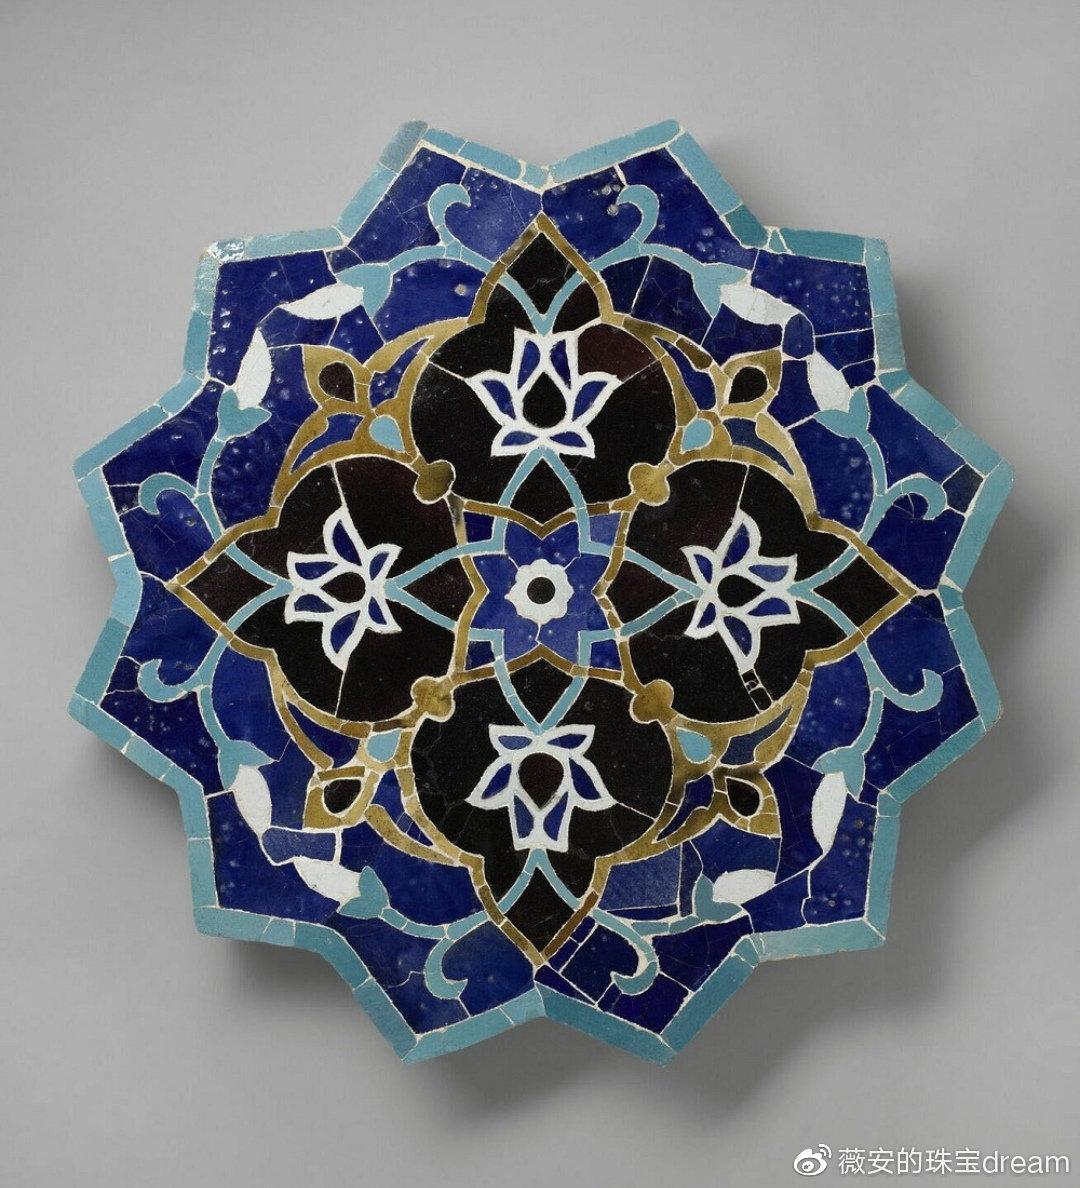 巴黎装饰艺术博物馆珠宝展——卡地亚与伊斯兰艺术